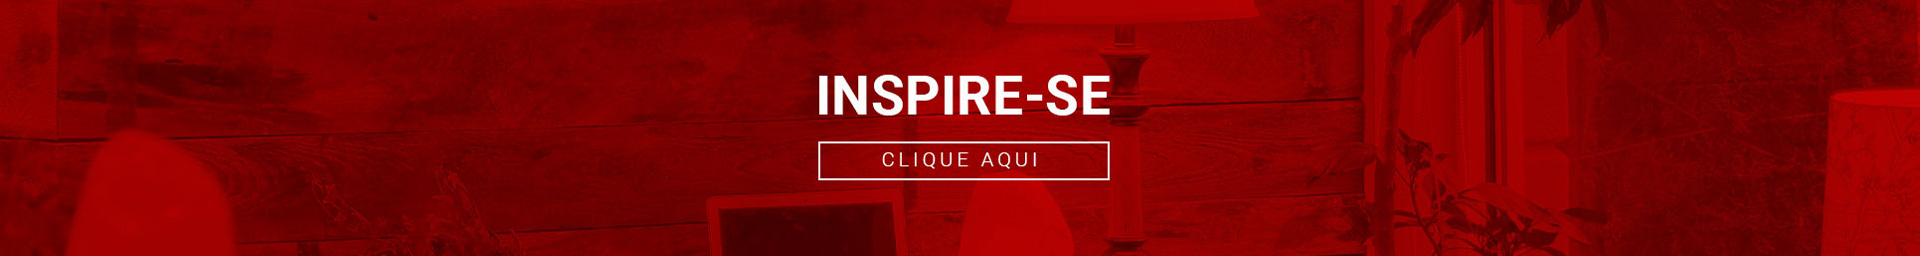 Inspire-se Clique Aqui | ParquetSP